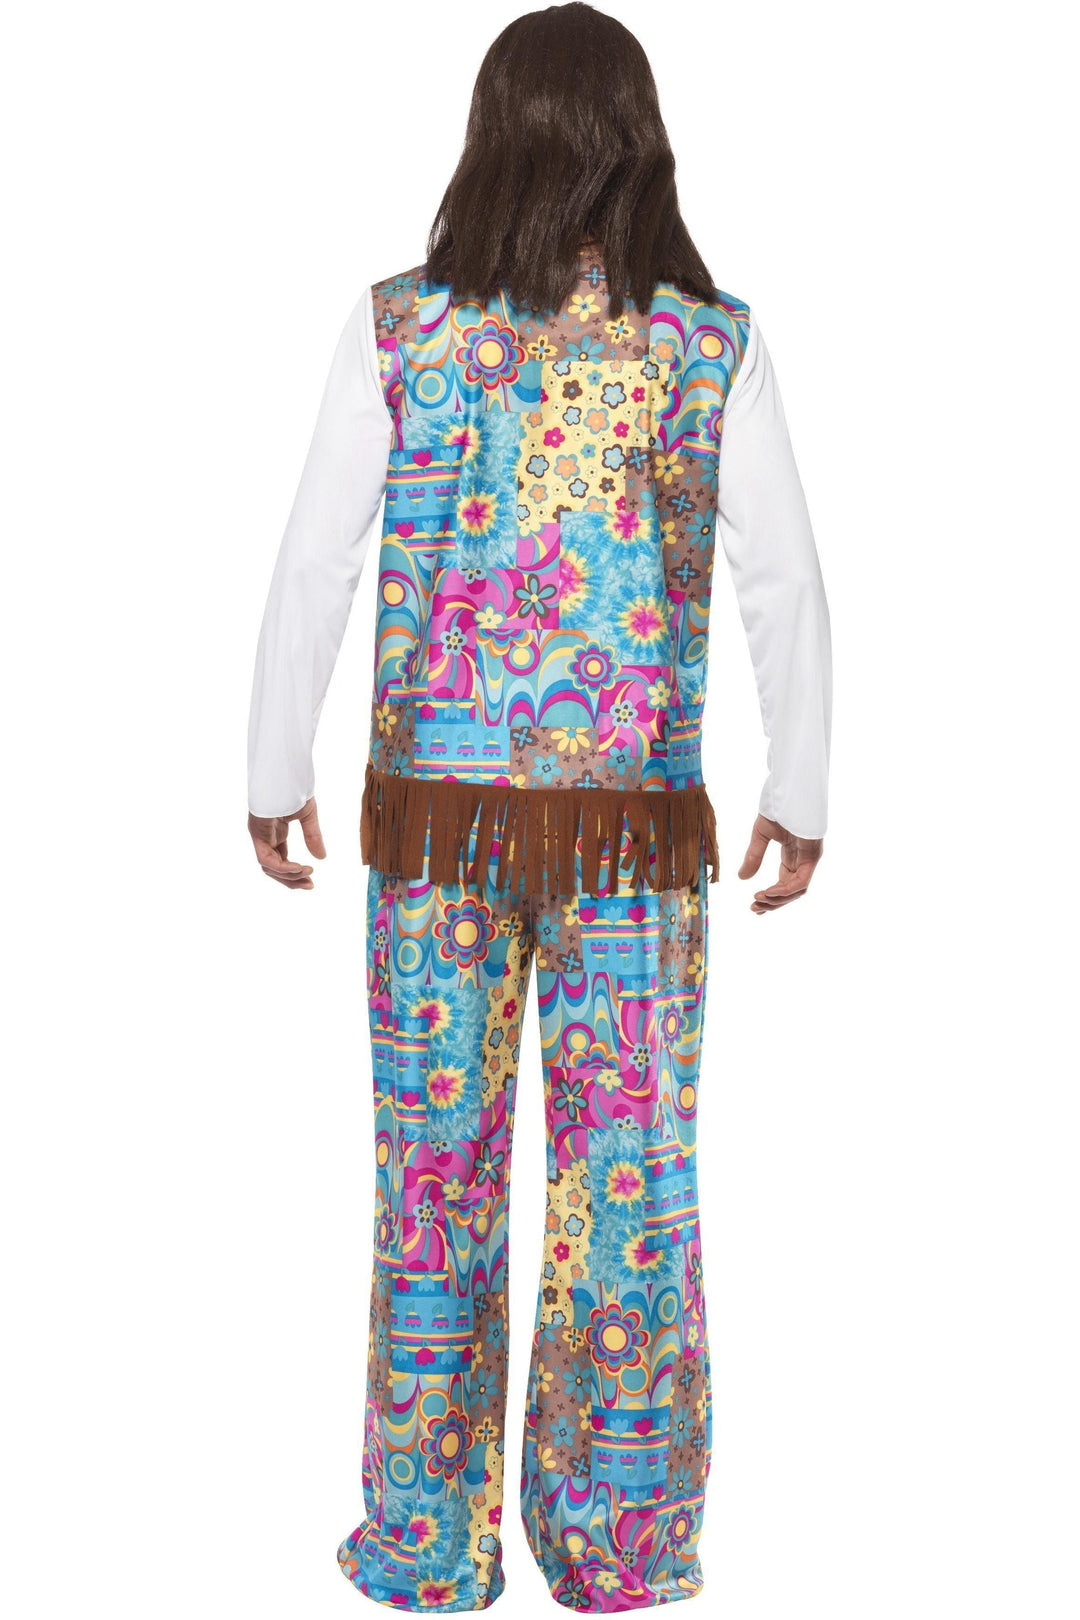 Groovy Hippie Costume